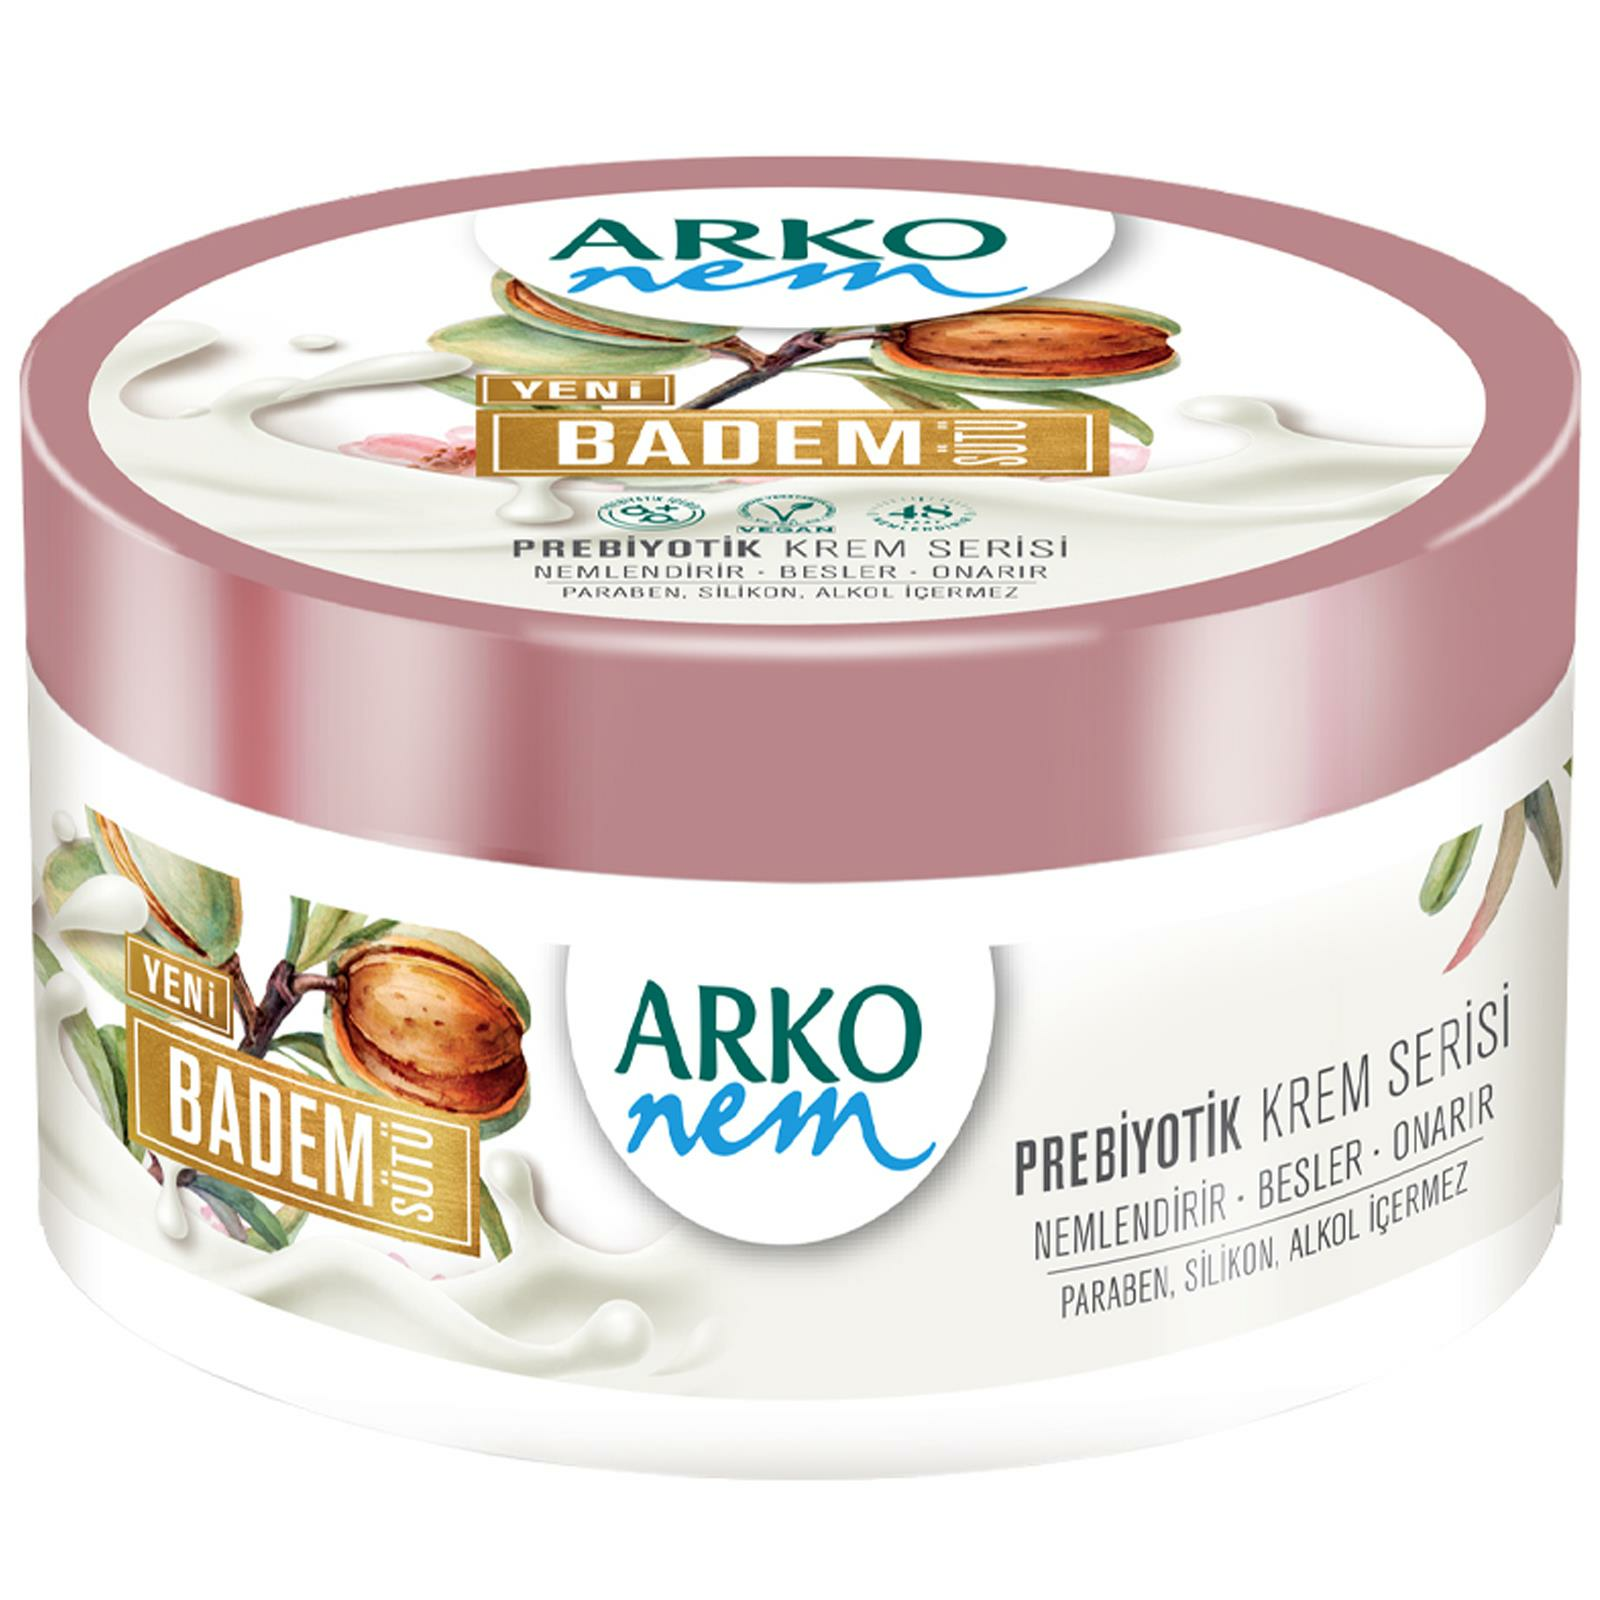 Arko Nem Prebiyotik Krem Serisi Badem Sütü Nemlendirici 250 ml